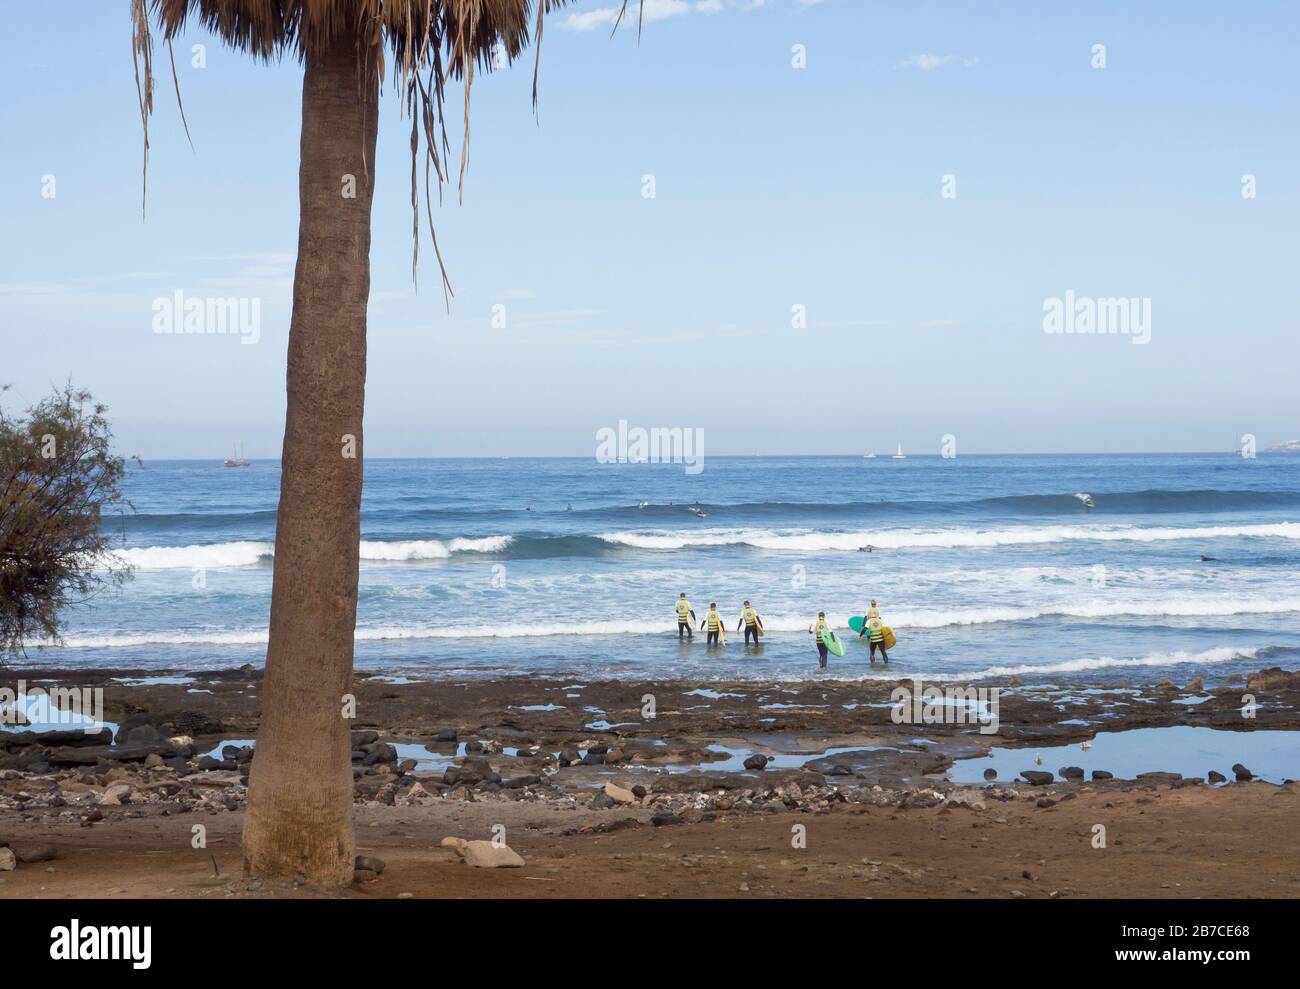 Un grupo de turistas que vadean hacia el océano Atlántico para aprender a surfear las olas, Playa de las américas, Tenerife Islas Canarias España Foto de stock